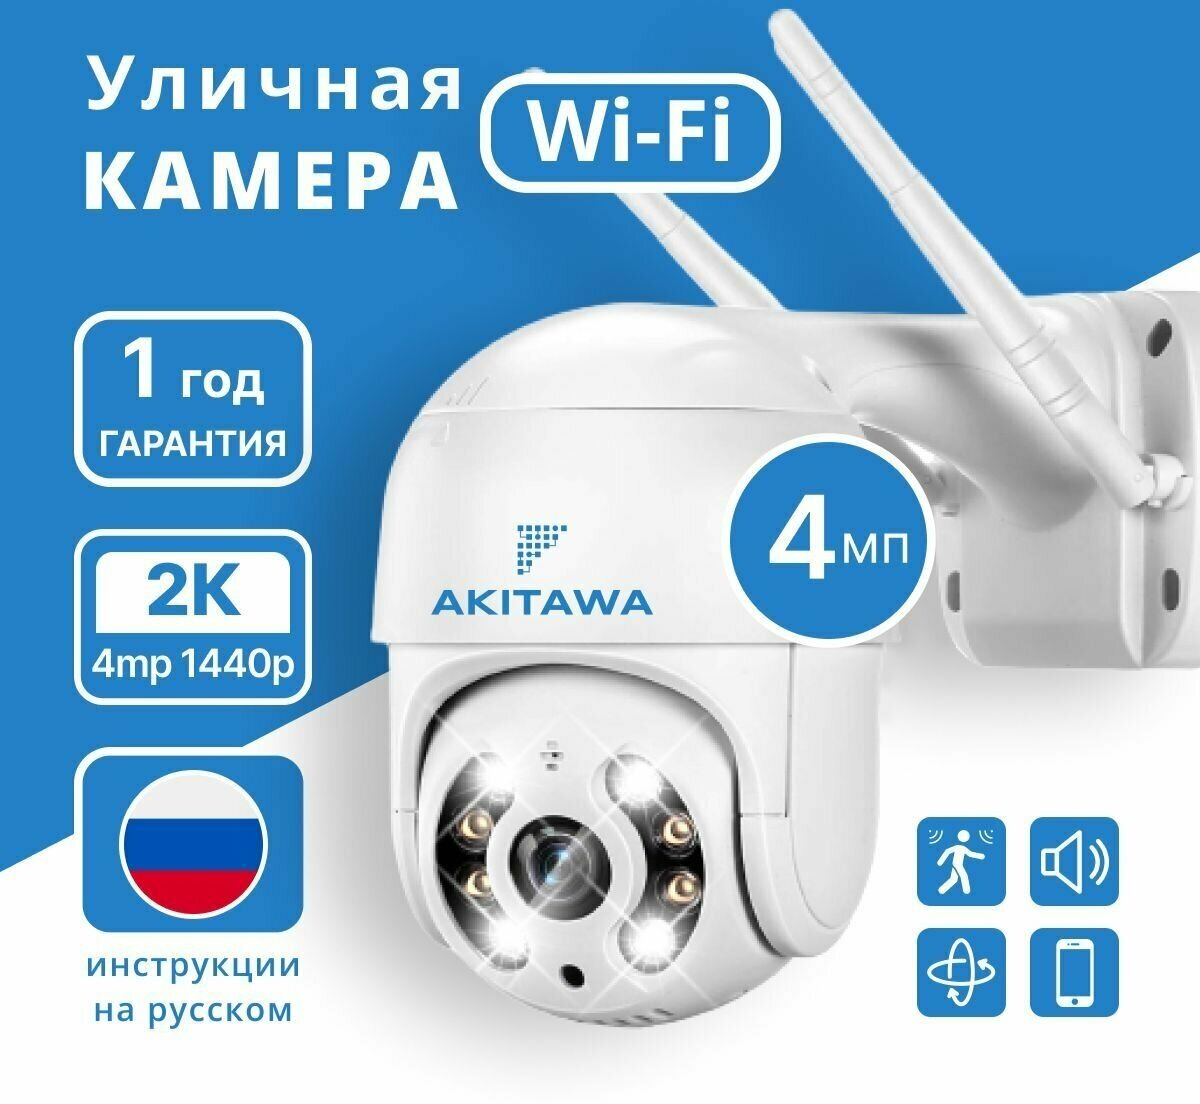 Камера видеонаблюдения Wifi уличная Akitawa 4 мп нуружного наблюдения 4x зум поворотная запись по движению удаленный доступ через телефон